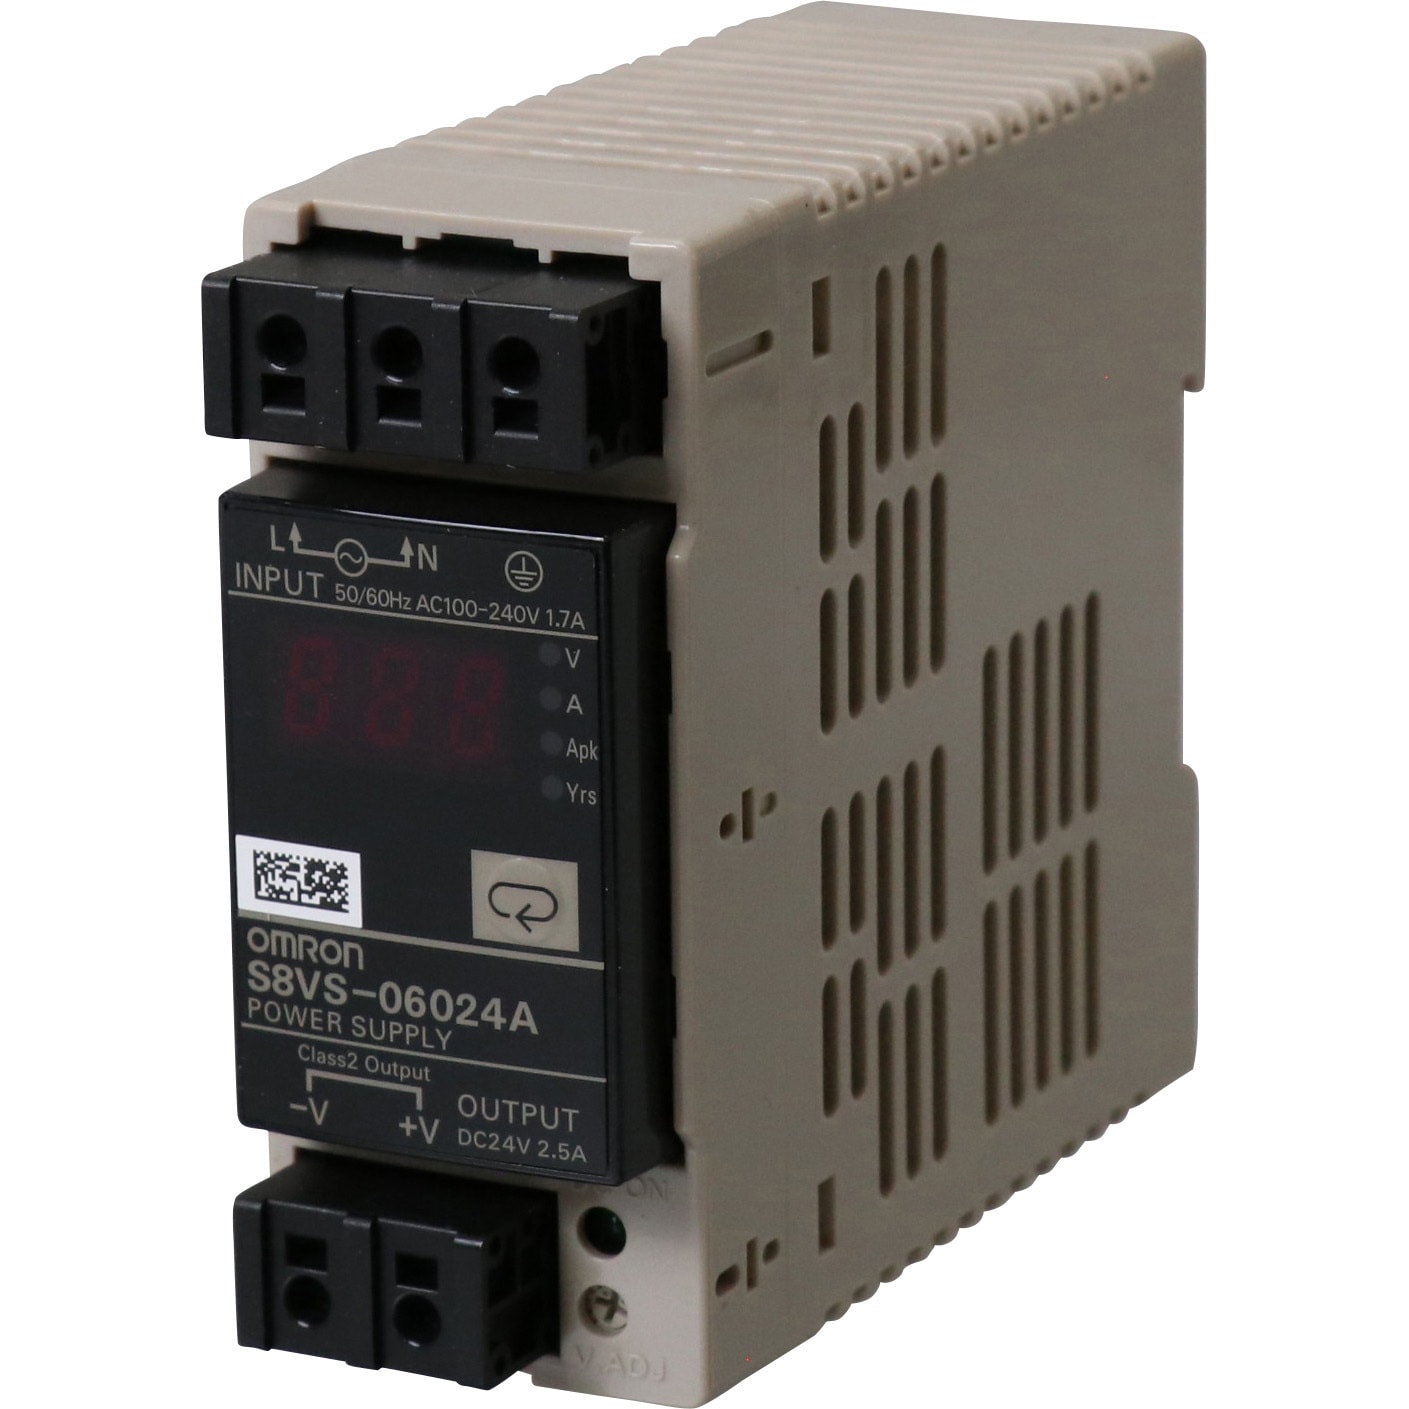 OMRON(オムロン) スイッチング パワーサプライ S8VSタイプ S8VS-12024A - 5